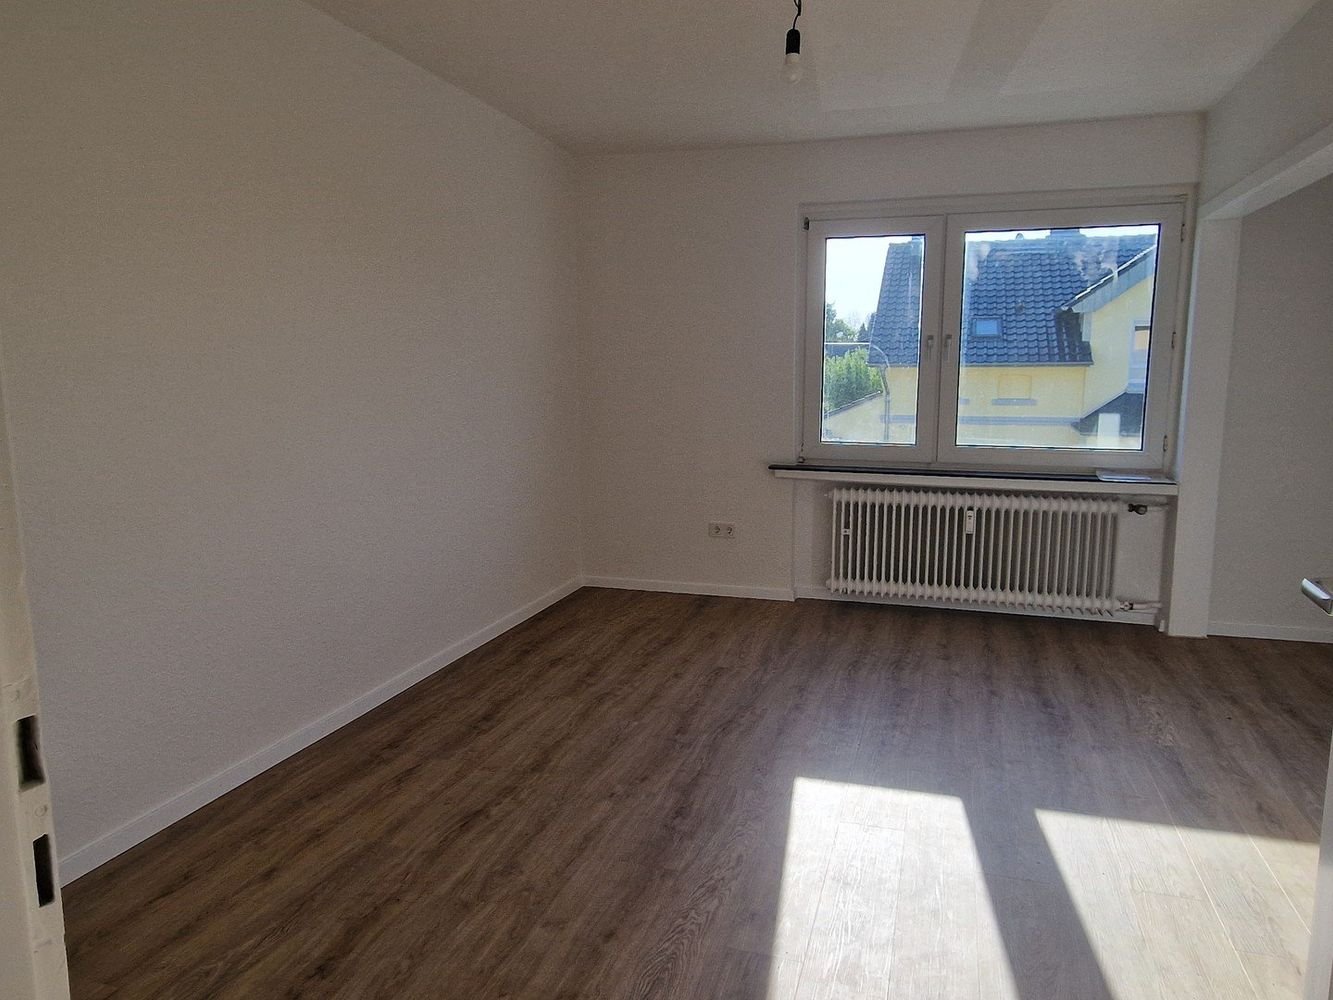 Schöne sanierte Ein Zimmer Wohnung nähe der Universität Dortmund